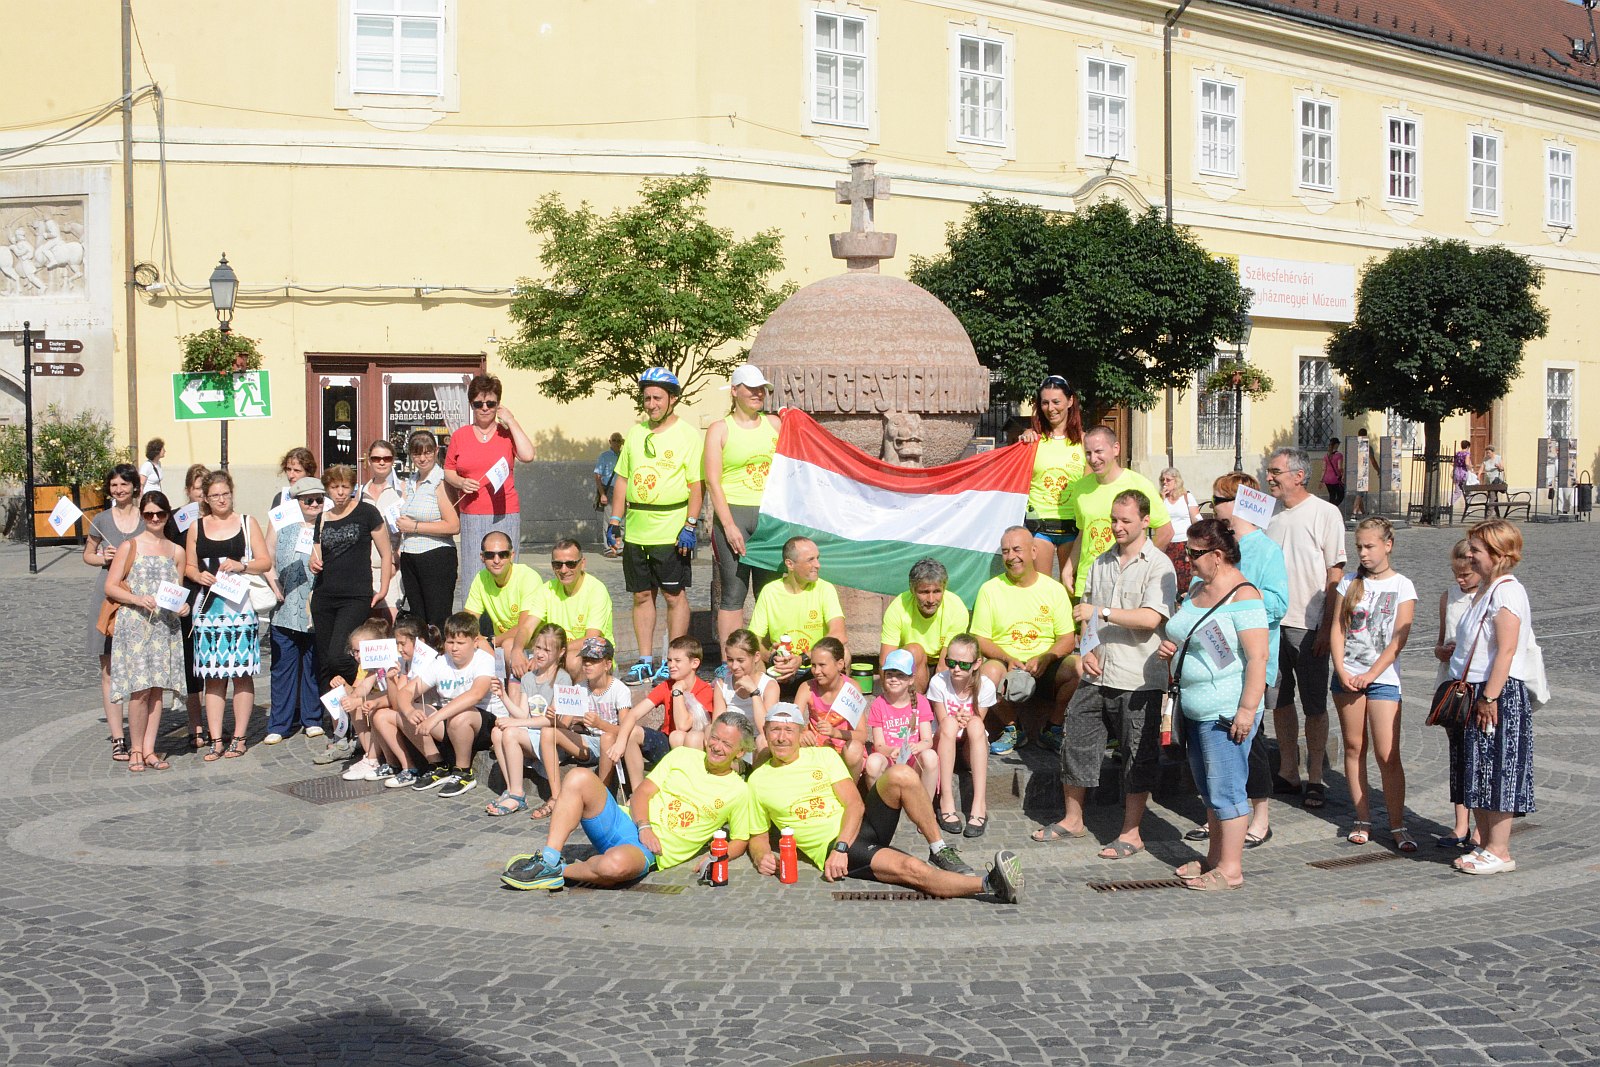 Jótékonysági futás - egy kaposvári hospice alapítványnak gyűjtenek Lajkó Csabáék